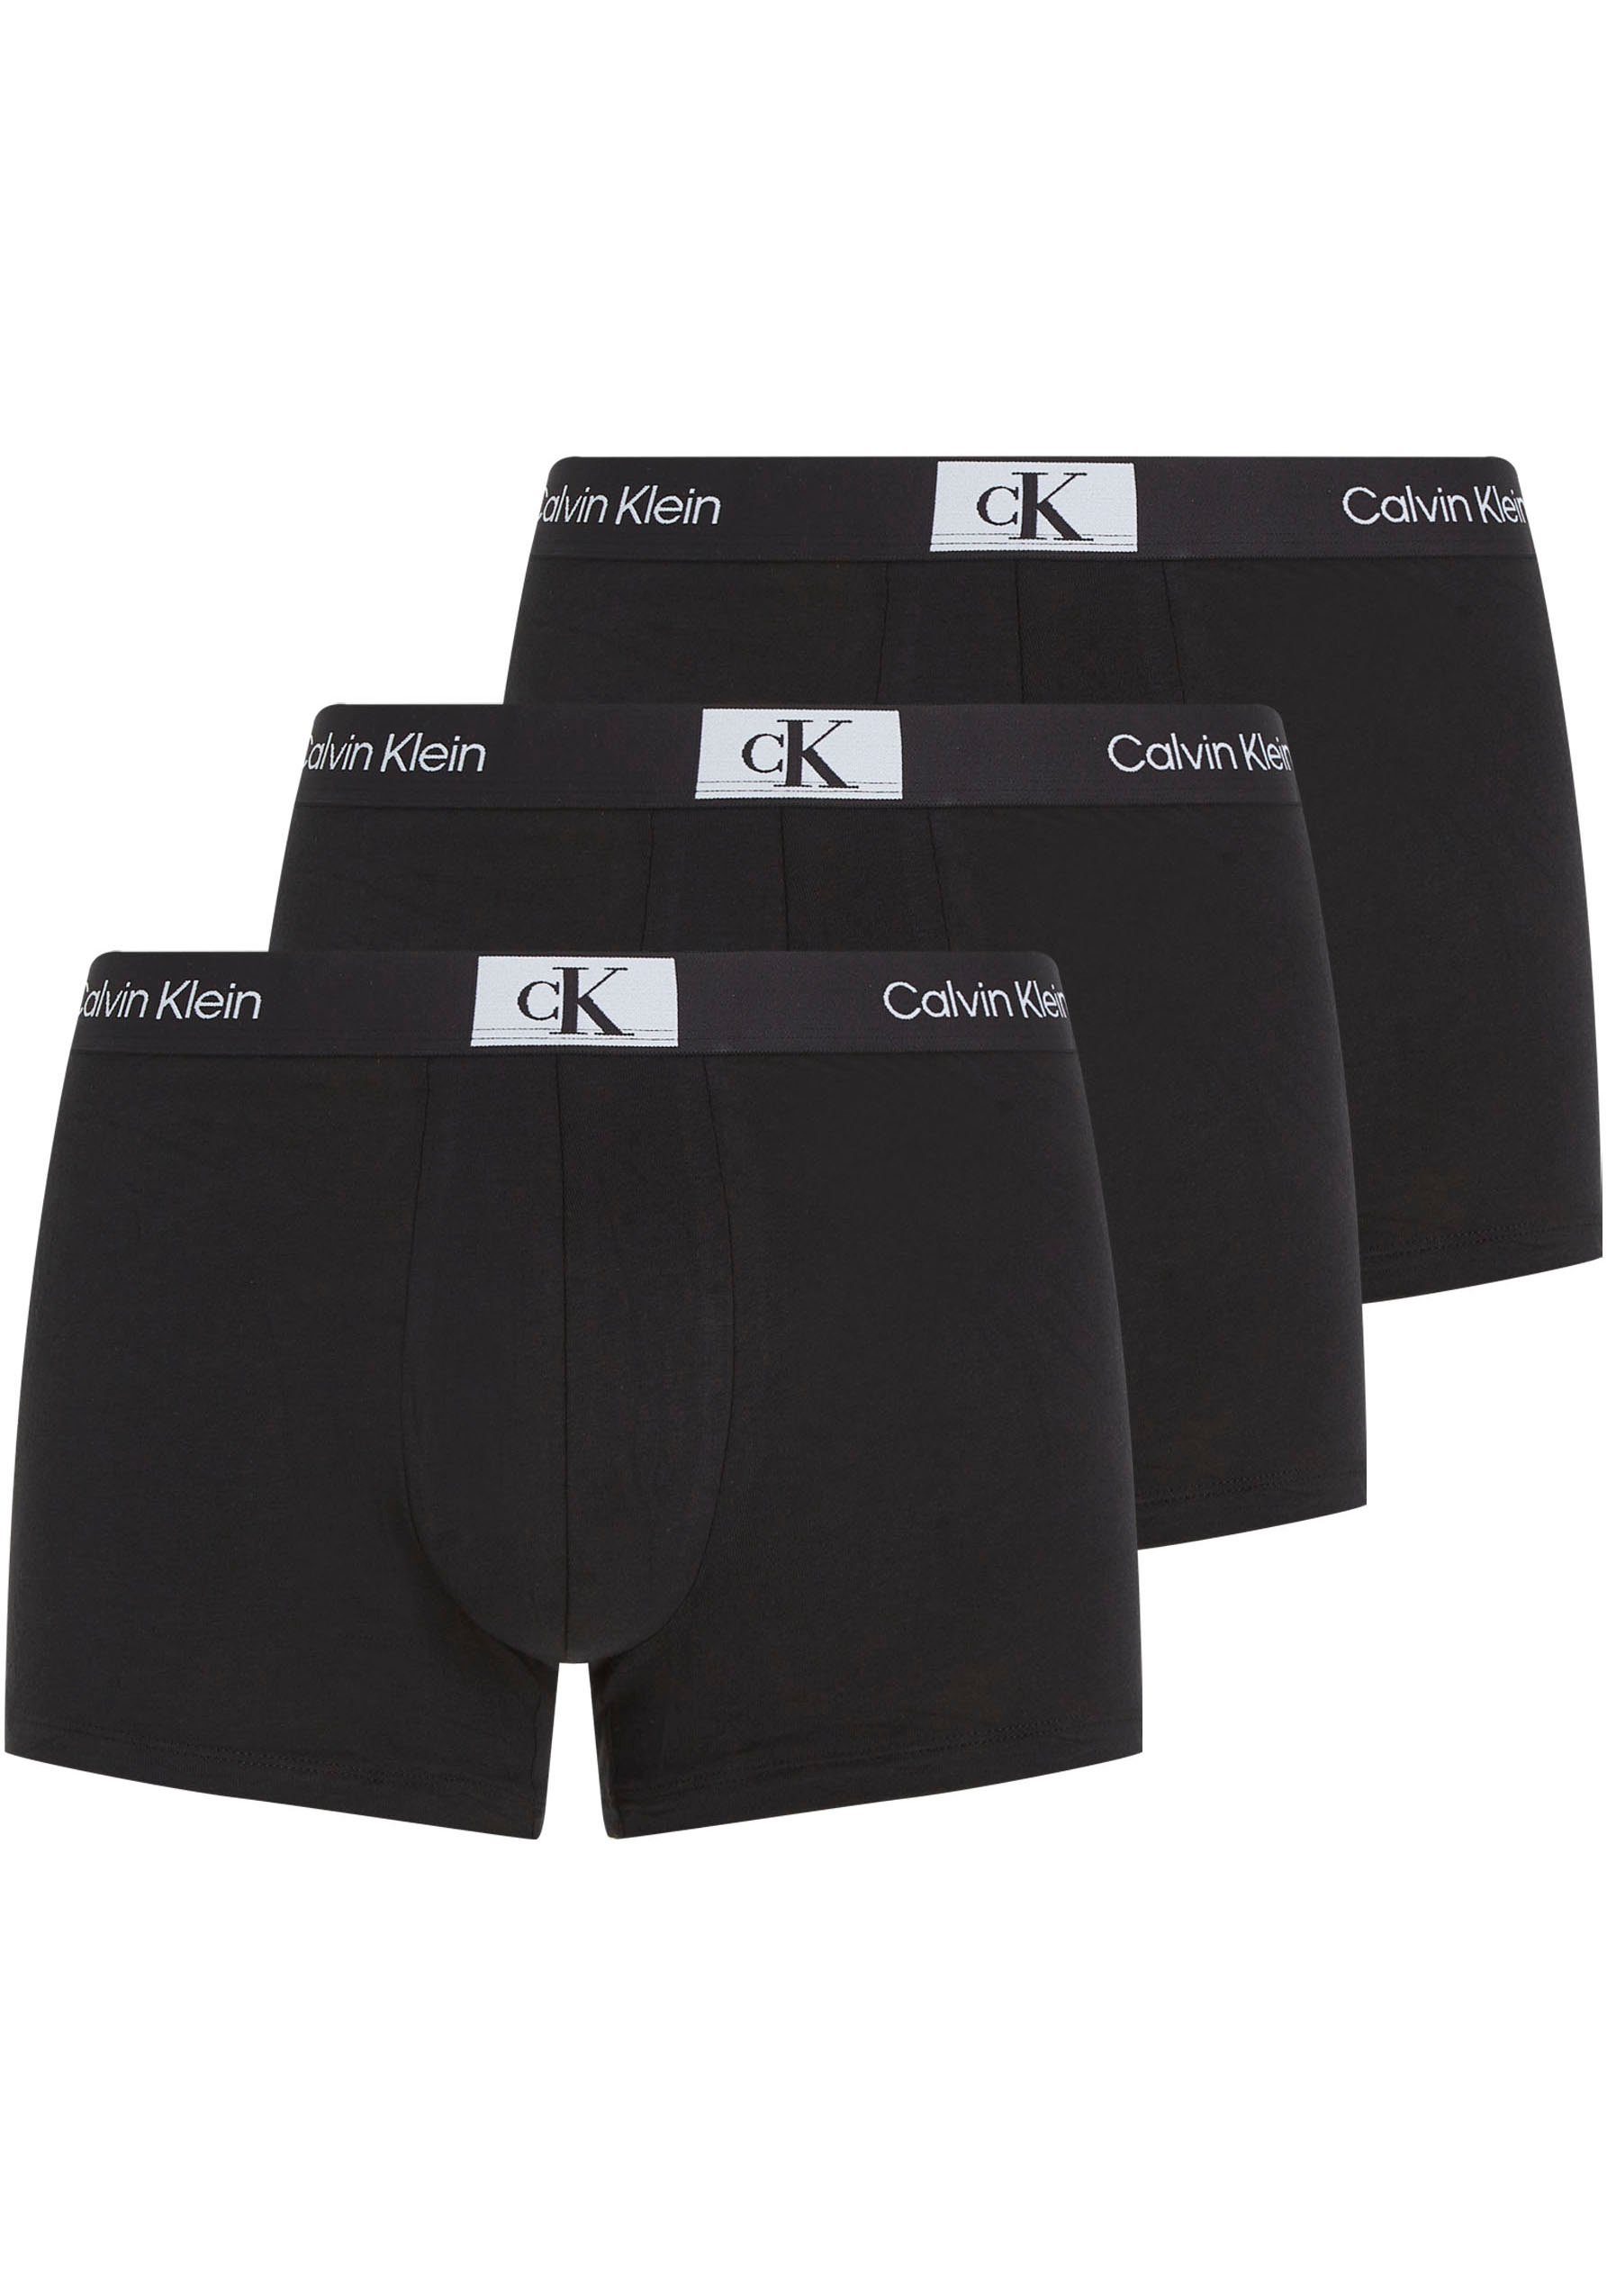 Calvin 3PK TRUNK Logo-Elastikbund Underwear BLACK&-BLACK&-BLACK (Packung, Trunk 3er-Pack) Klein Calvin Klein mit